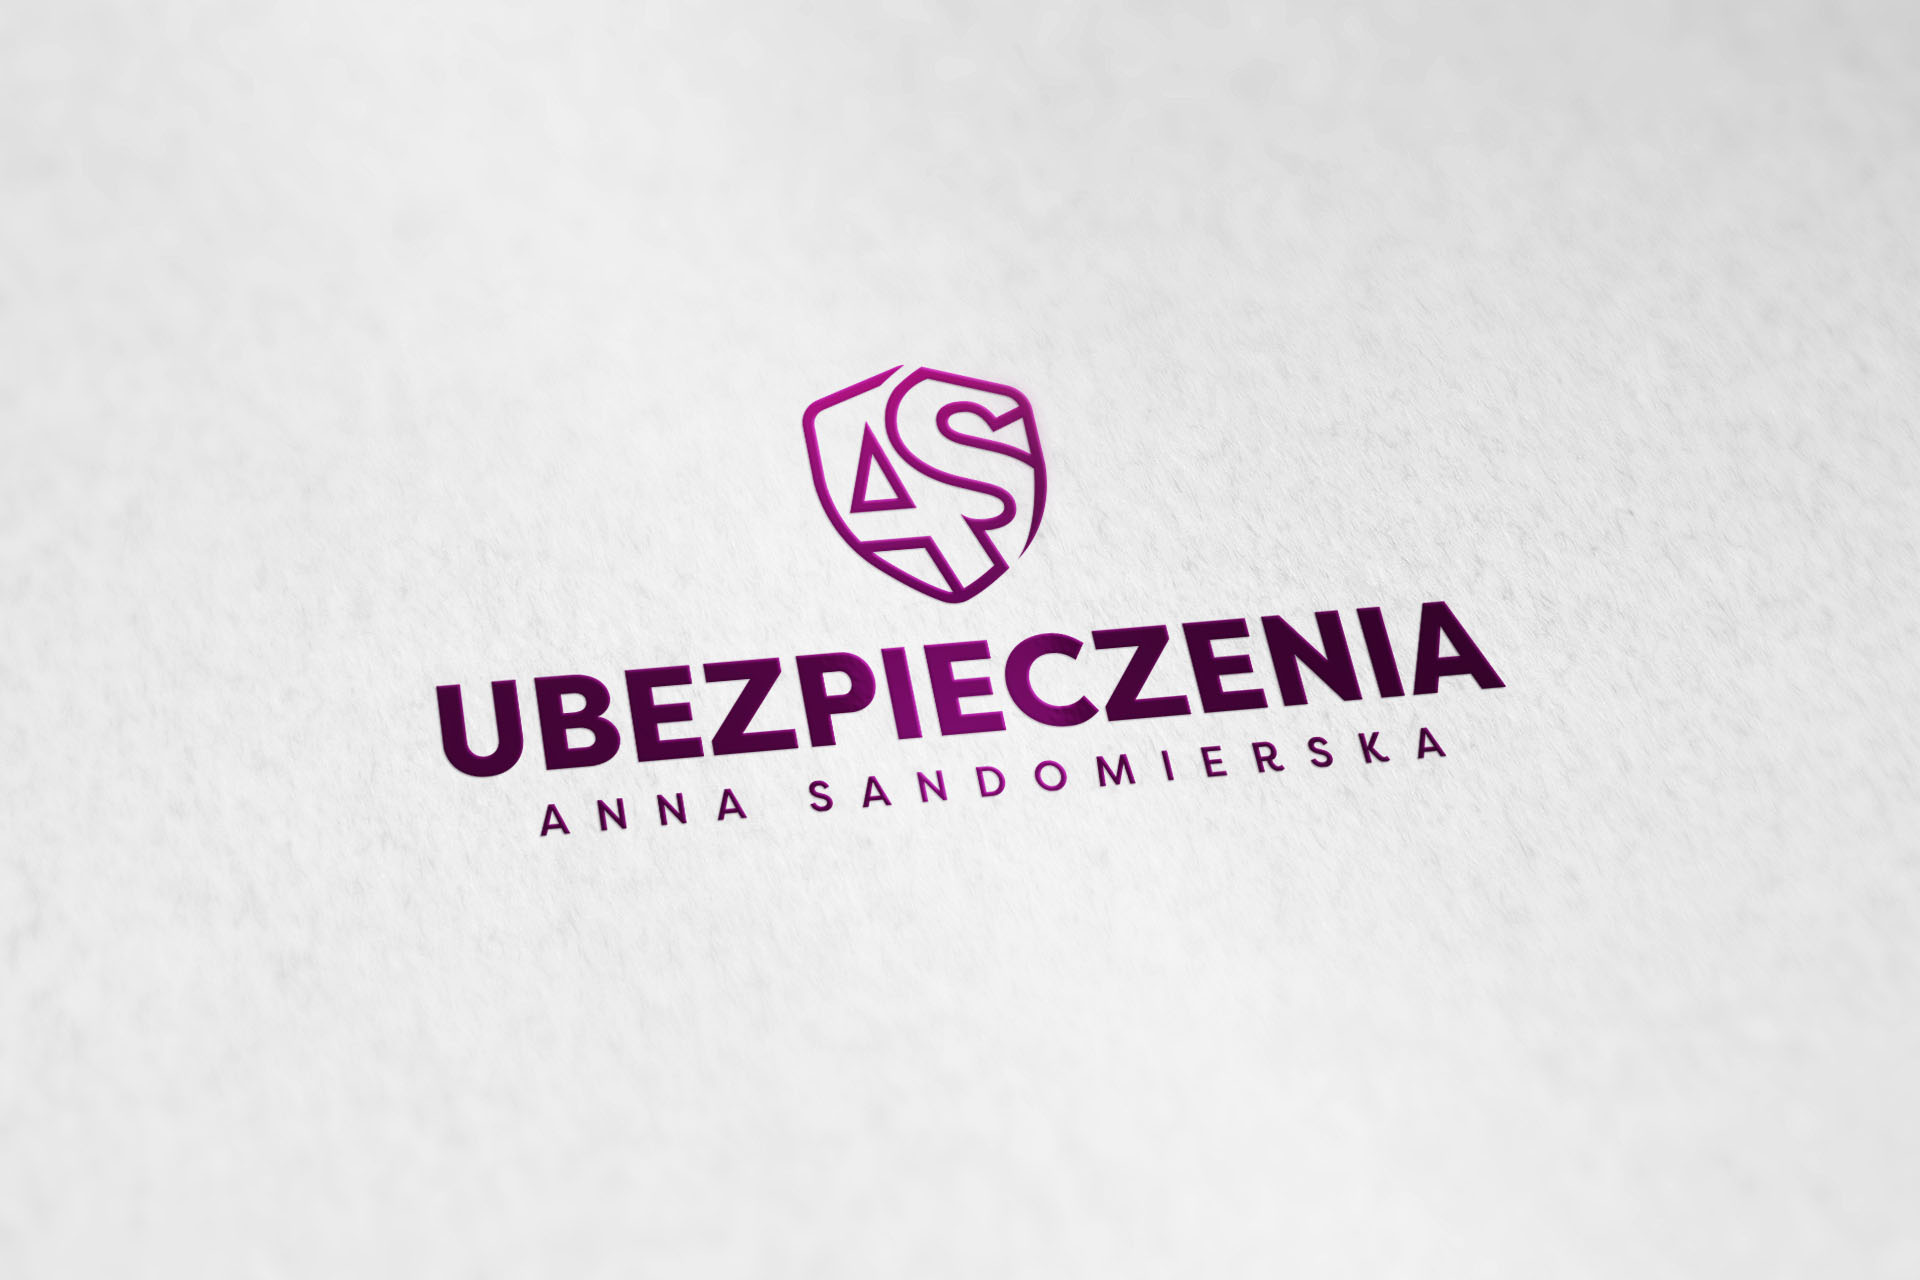 Ubezpieczenia Anna Sandomierska, Logo